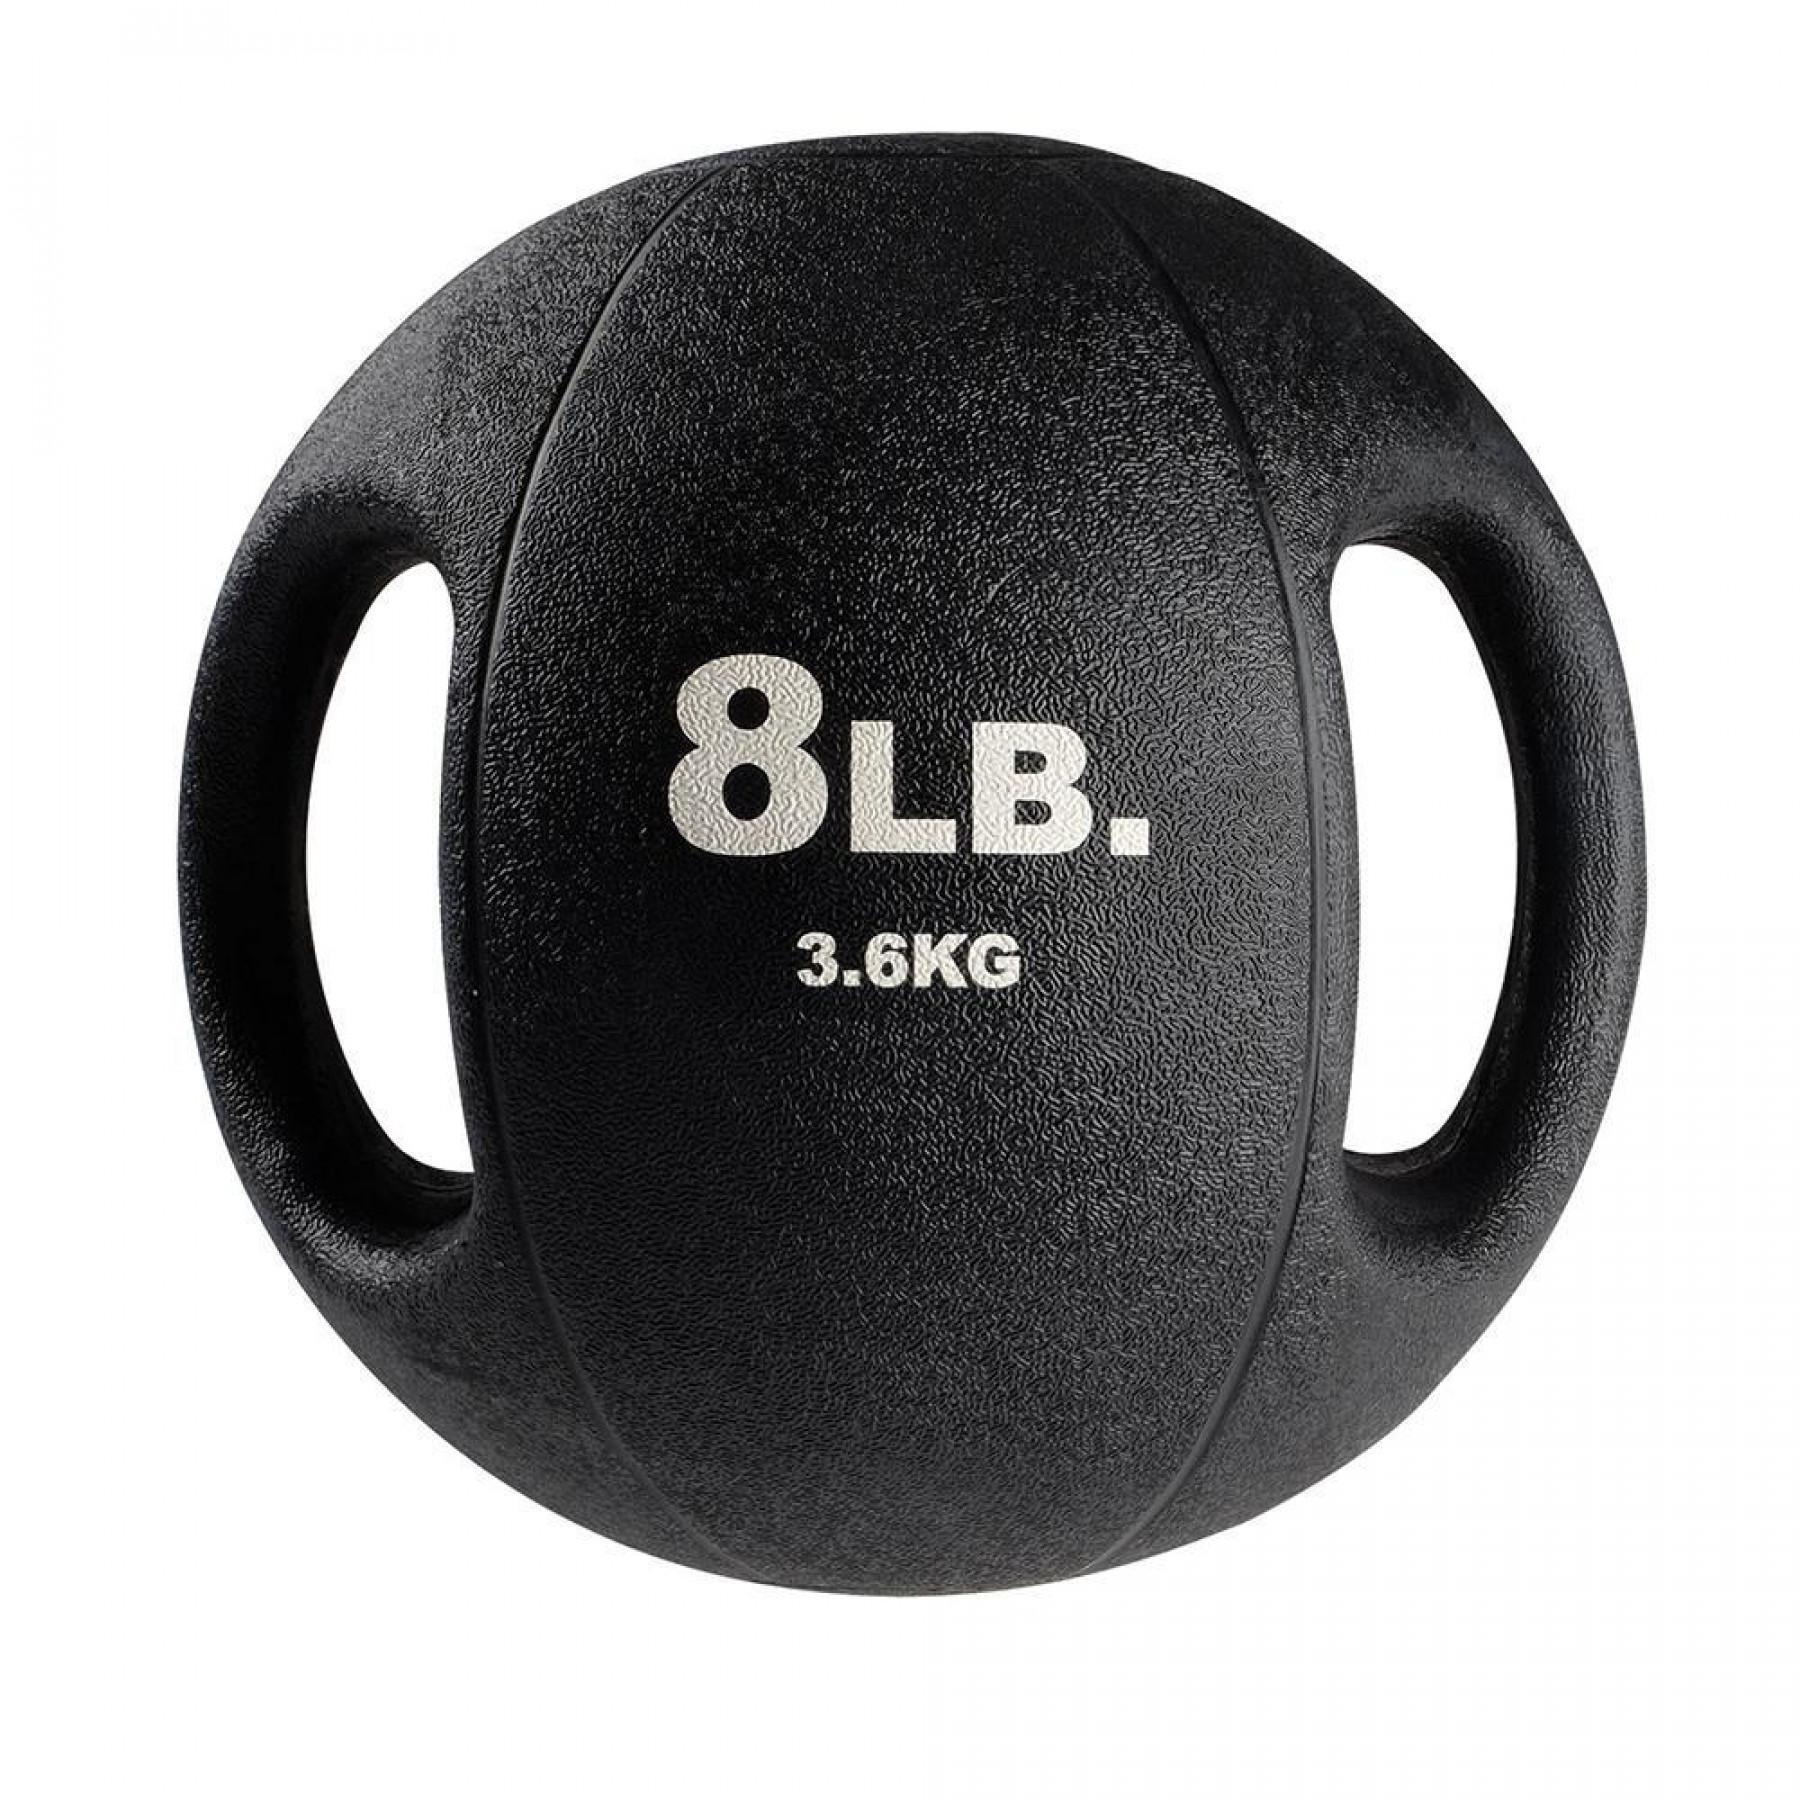 Medizinball 2 Griffe 3,6 kg Body Solid